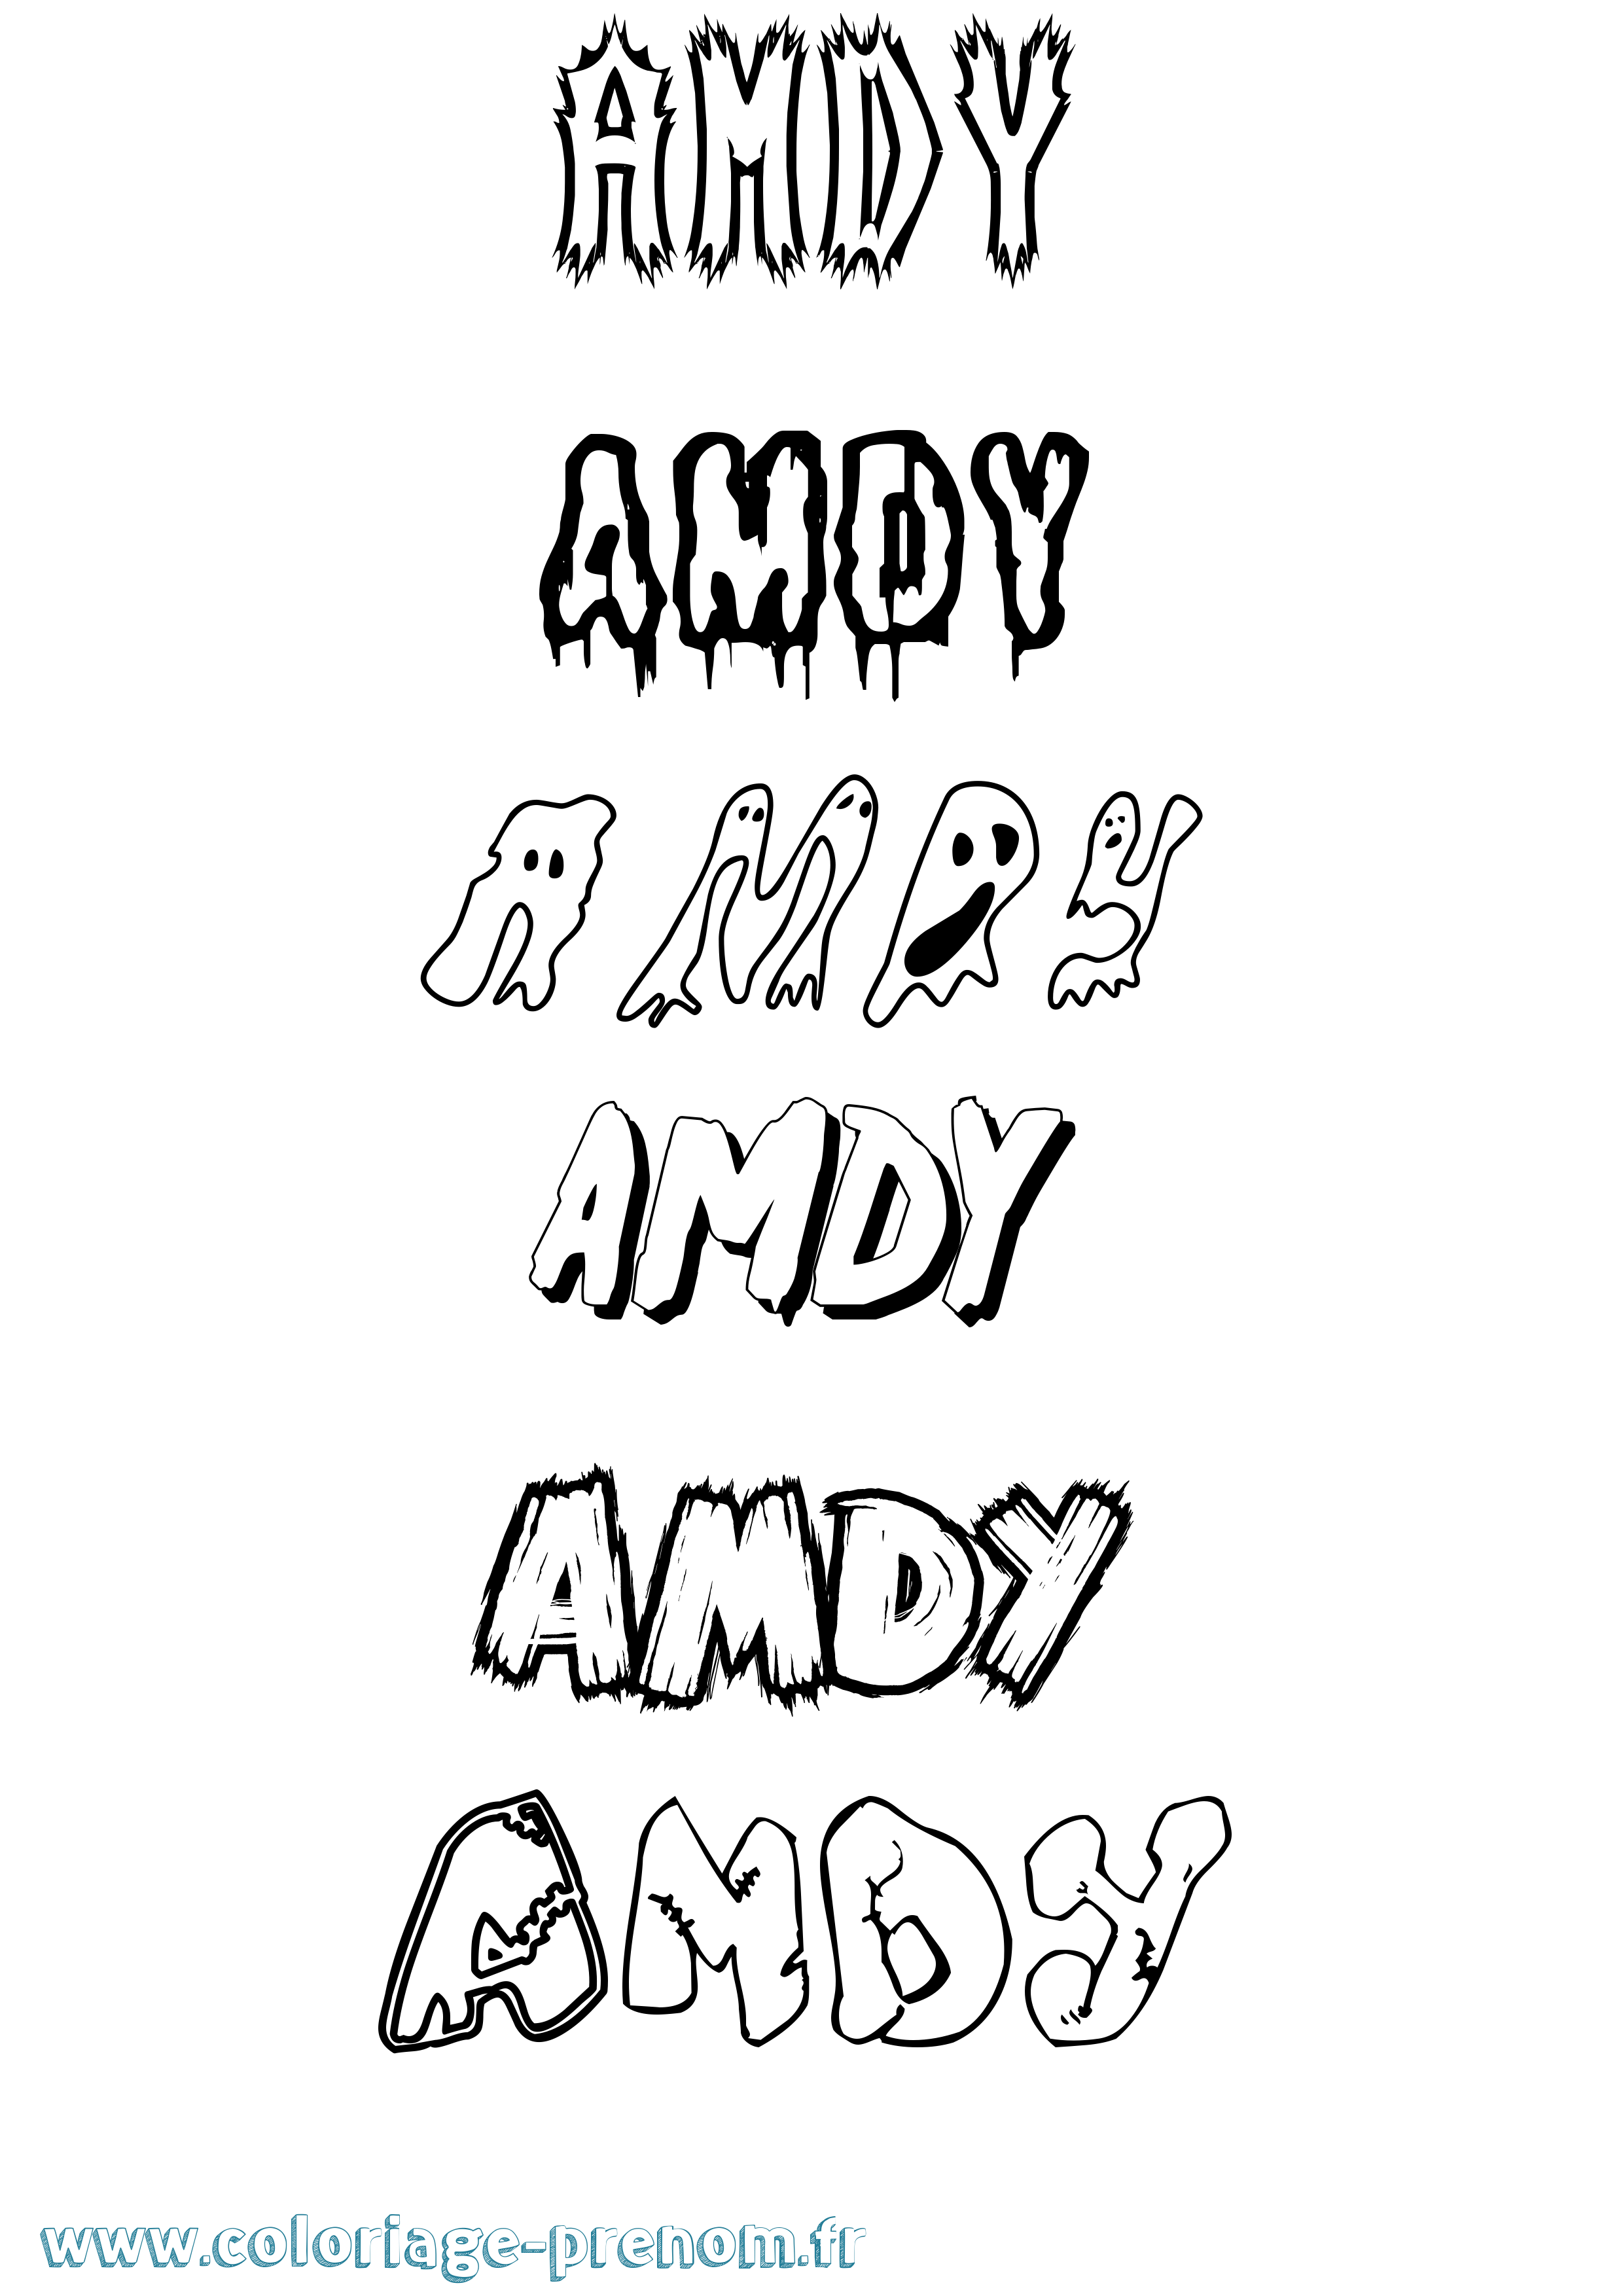 Coloriage prénom Amdy Frisson